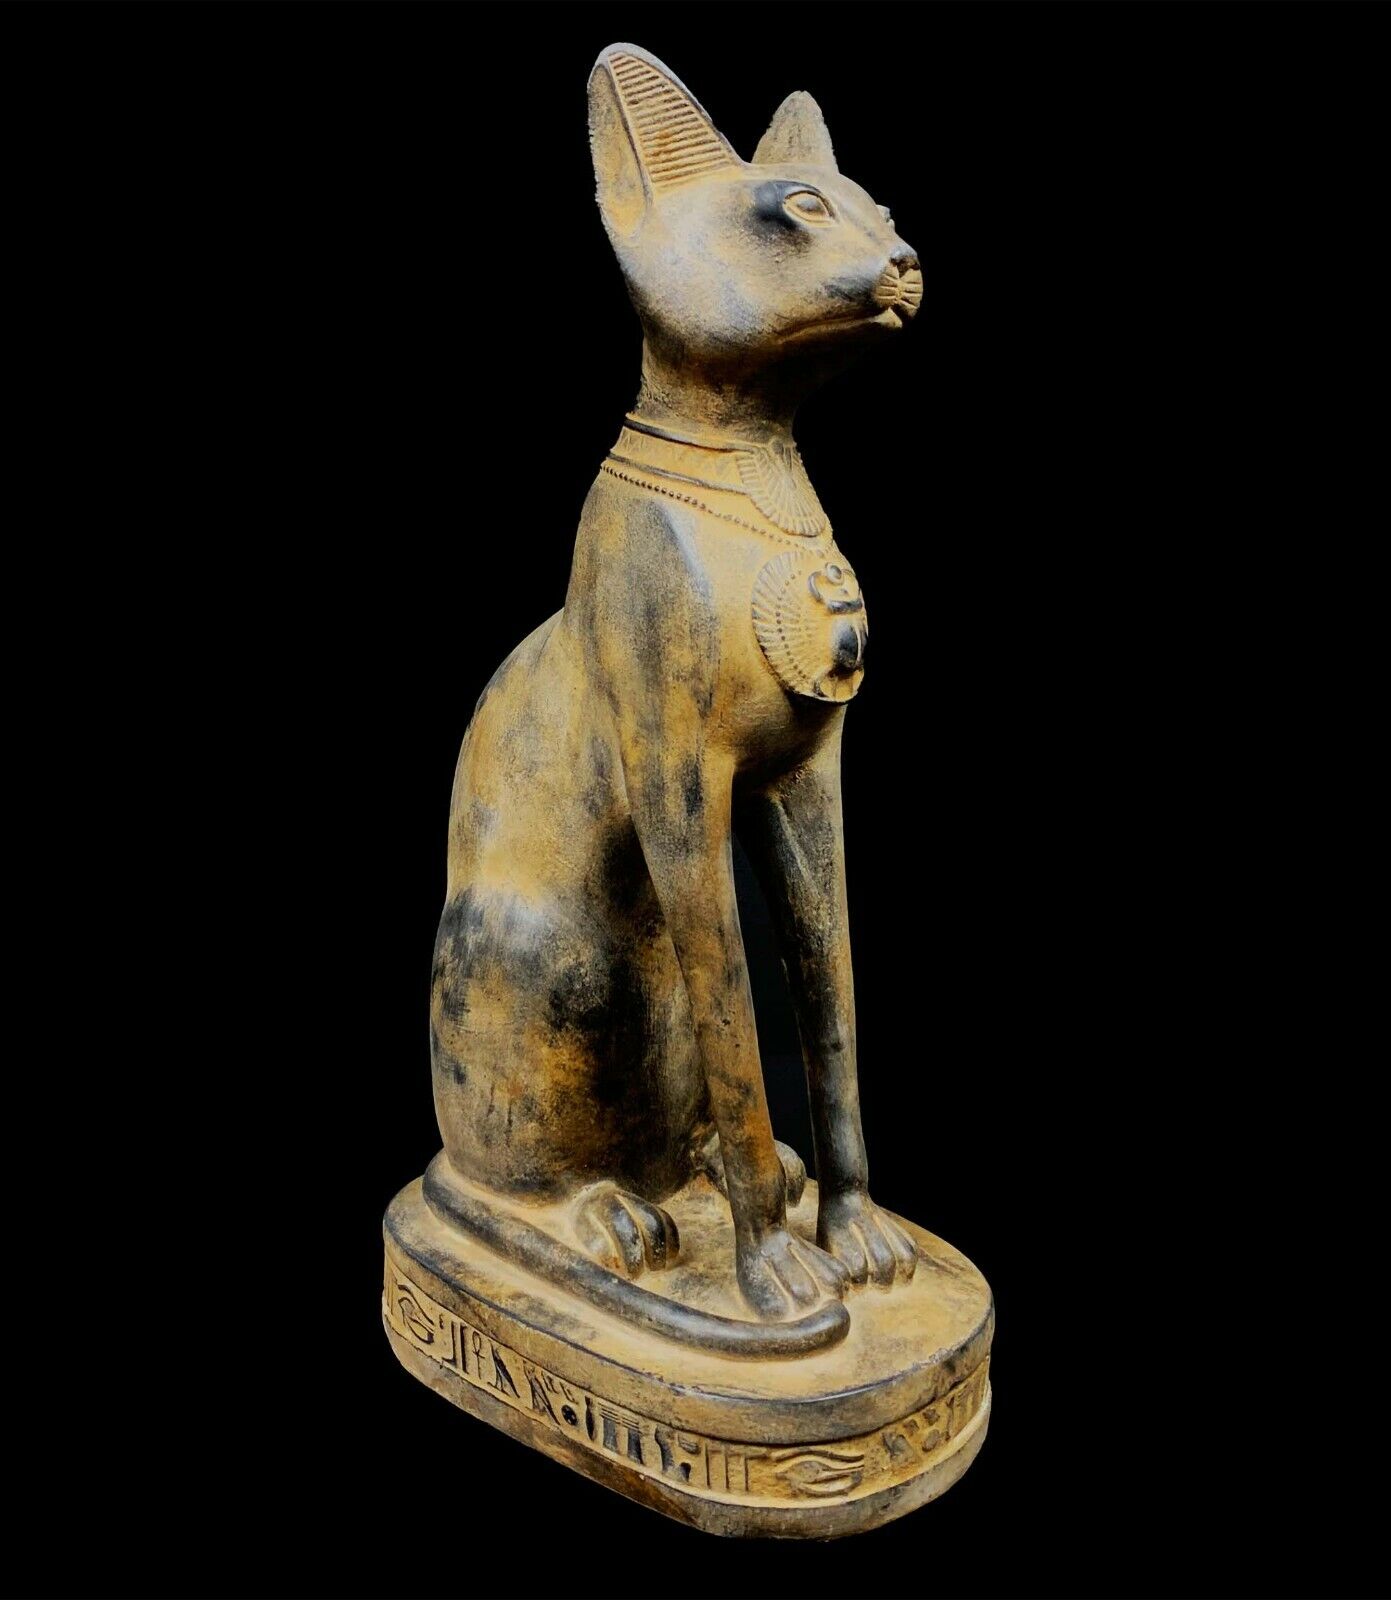 Marvelous Egyptian Cat BASTET GODDESS of Protection & Good luck